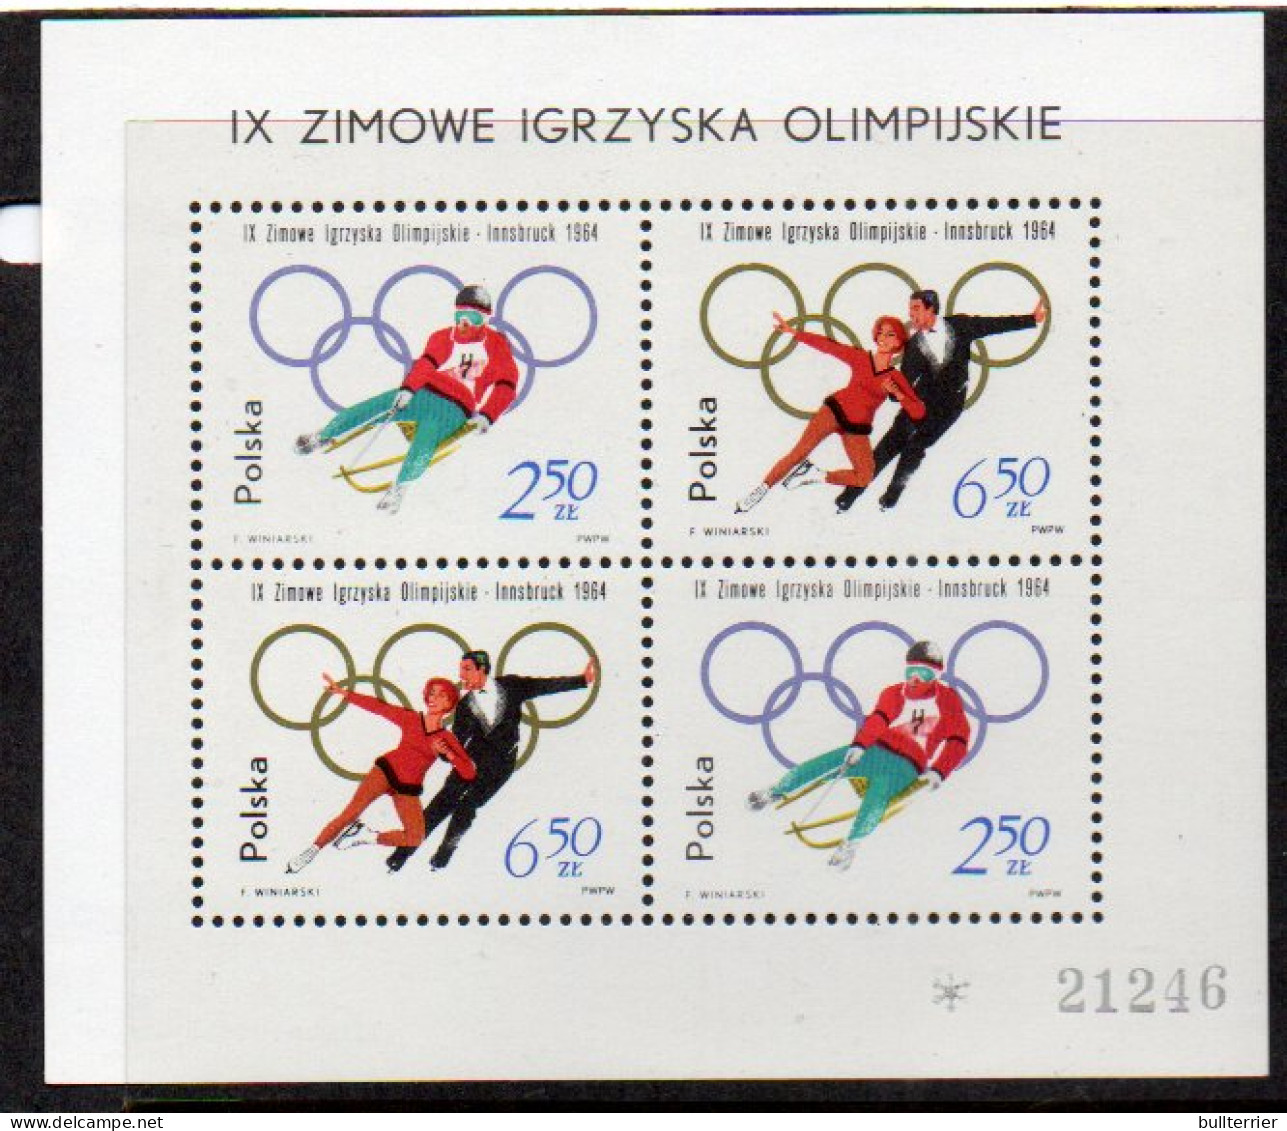 POLAND - 1964 INNSBRUCK OLYMPICS SOUVENIR SHEET  MINT NEVER HINGED,SG £46 - Blocks & Kleinbögen